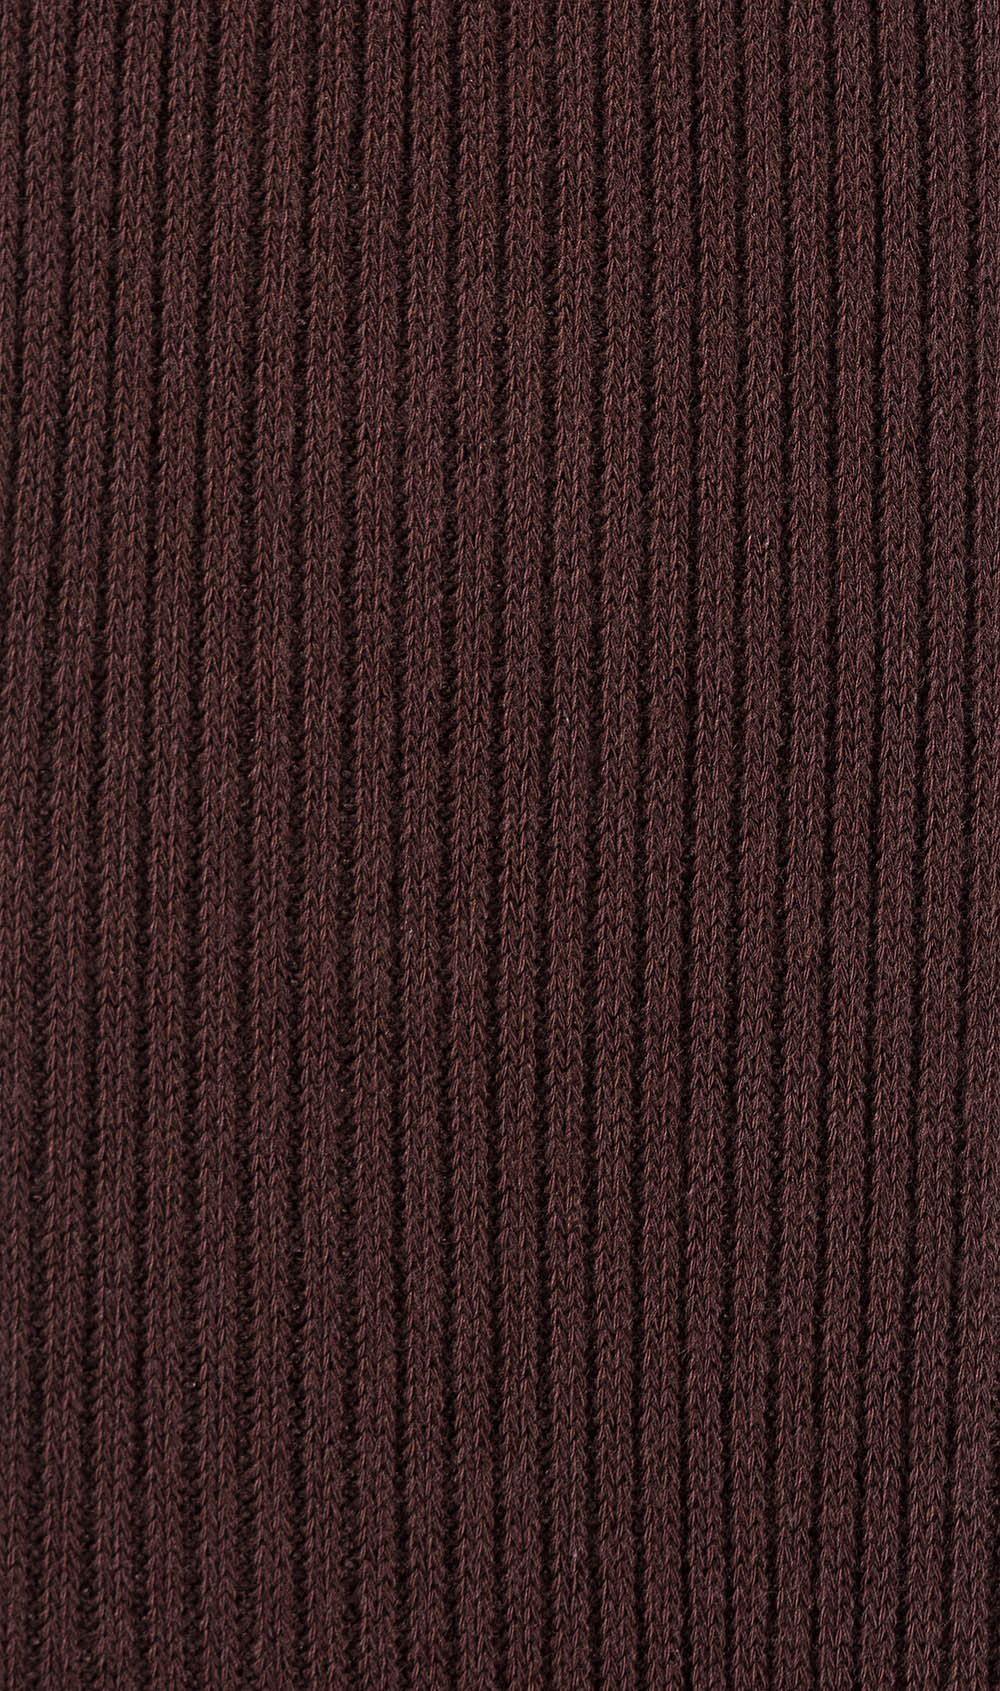 Dark Coffee Brown Ribbed Socks Pattern